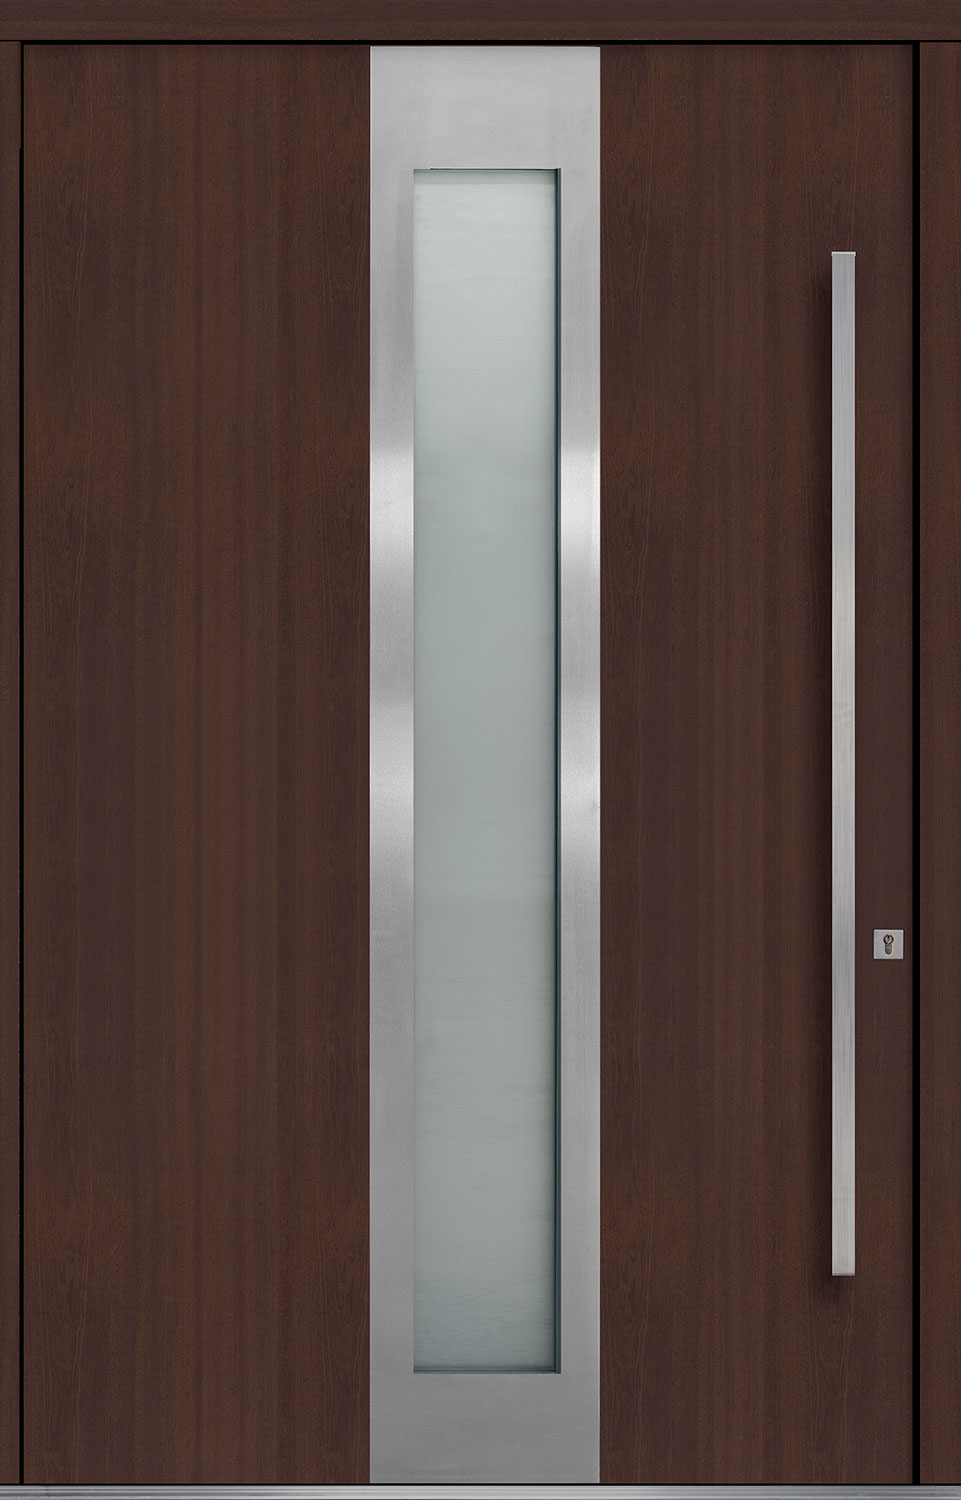 Wood Front Door - Single